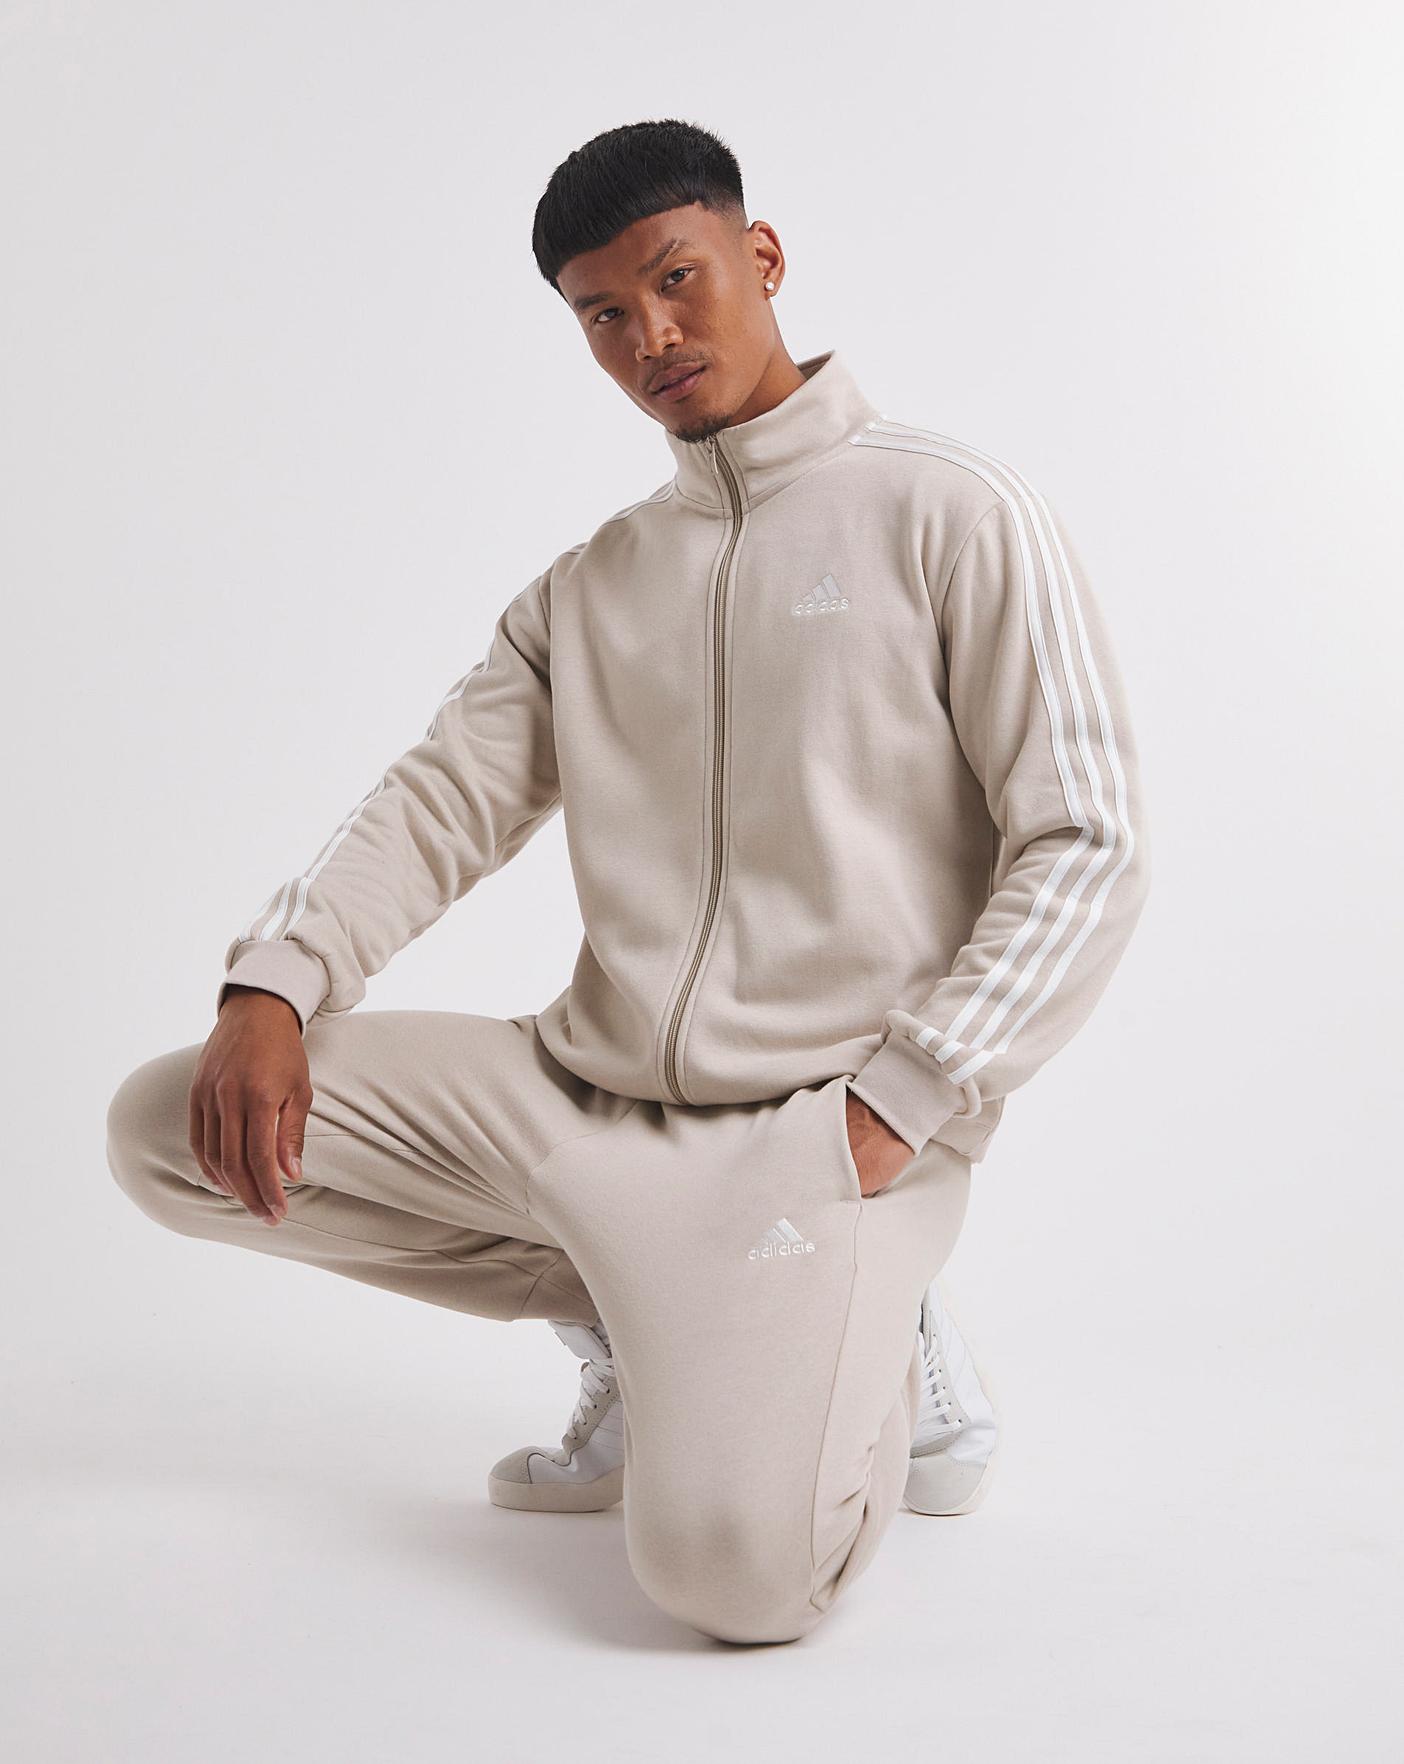 Adidas Originals Unisex-Baby Adicolor Track Suit, Black, 6 Months -  Walmart.com